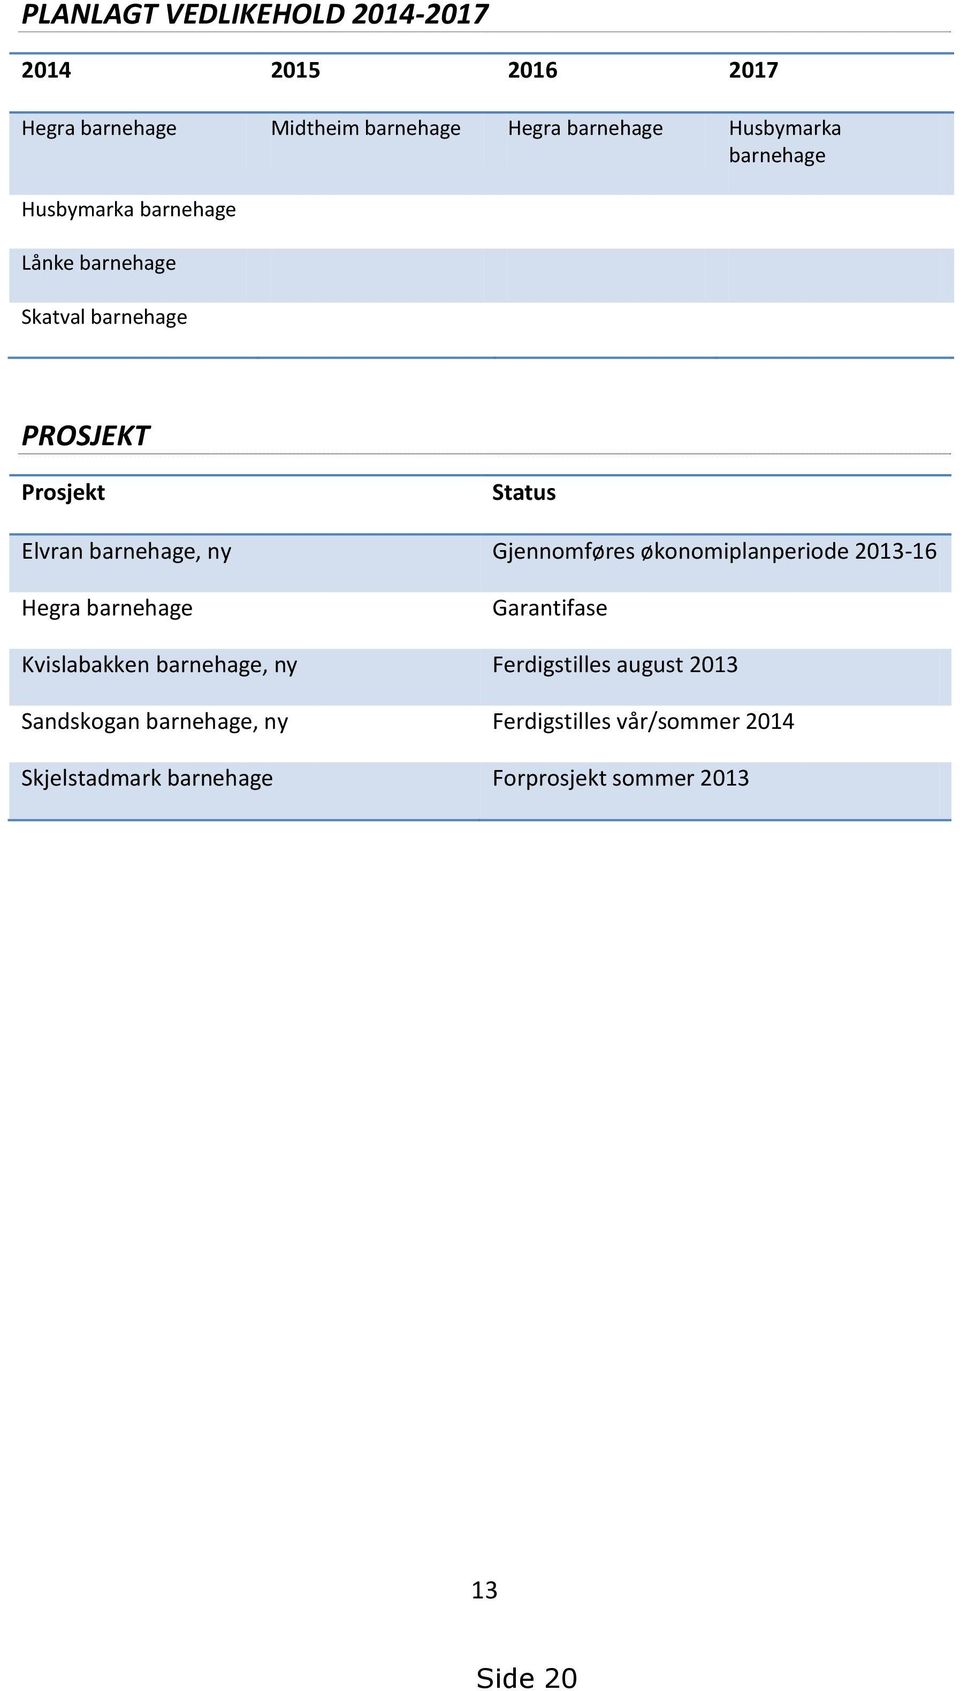 Gjennomføres økonomiplanperiode 2013-16 Hegra barnehage Garantifase Kvislabakken barnehage, ny Ferdigstilles